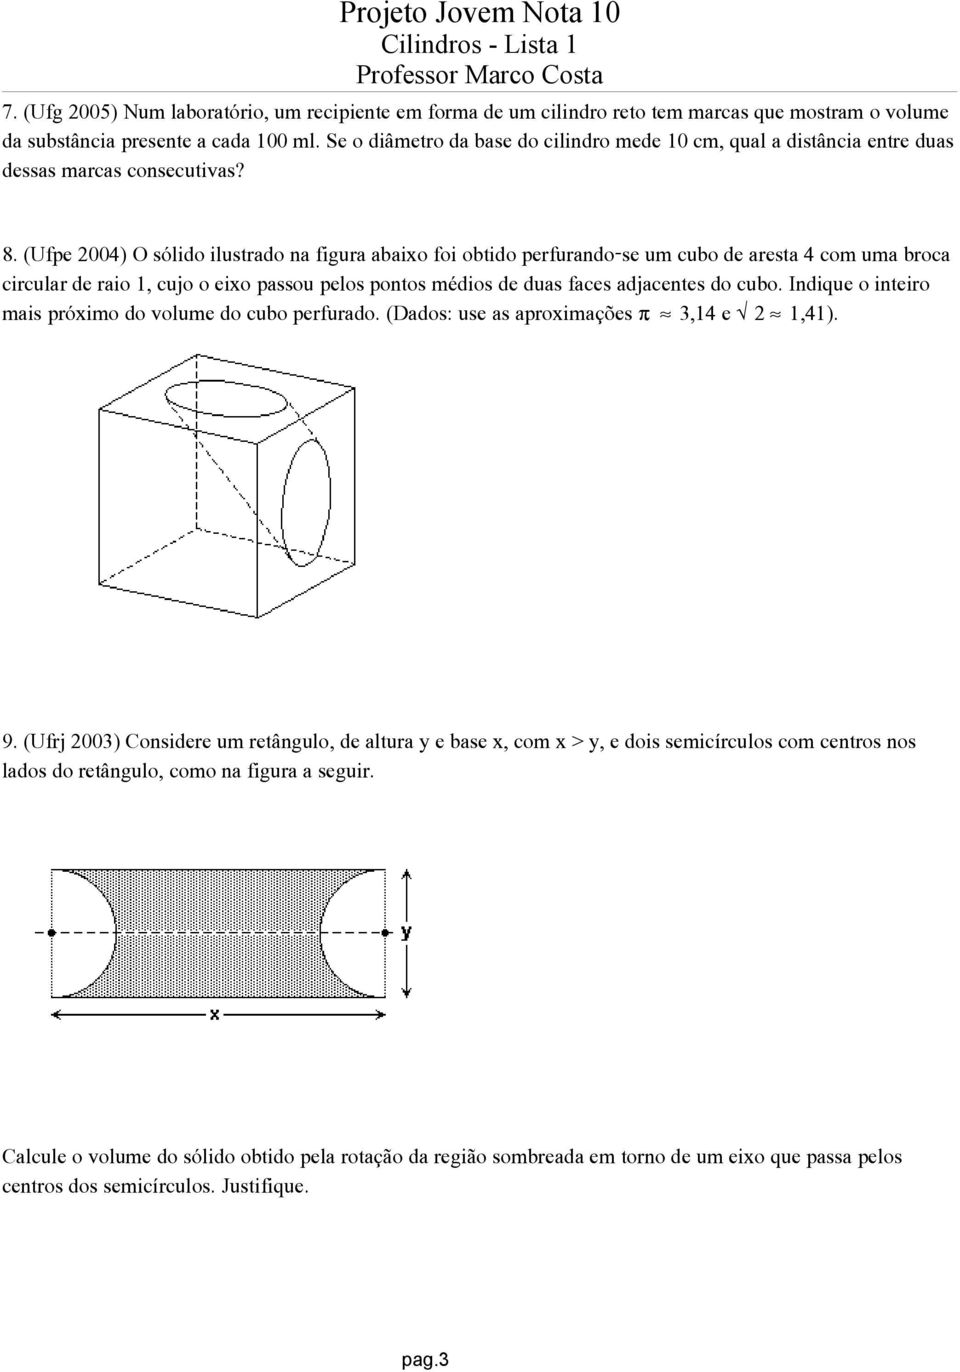 (Ufpe 2004) O sólido ilustrado na figura abaixo foi obtido perfurando-se um cubo de aresta 4 com uma broca circular de raio 1, cujo o eixo passou pelos pontos médios de duas faces adjacentes do cubo.